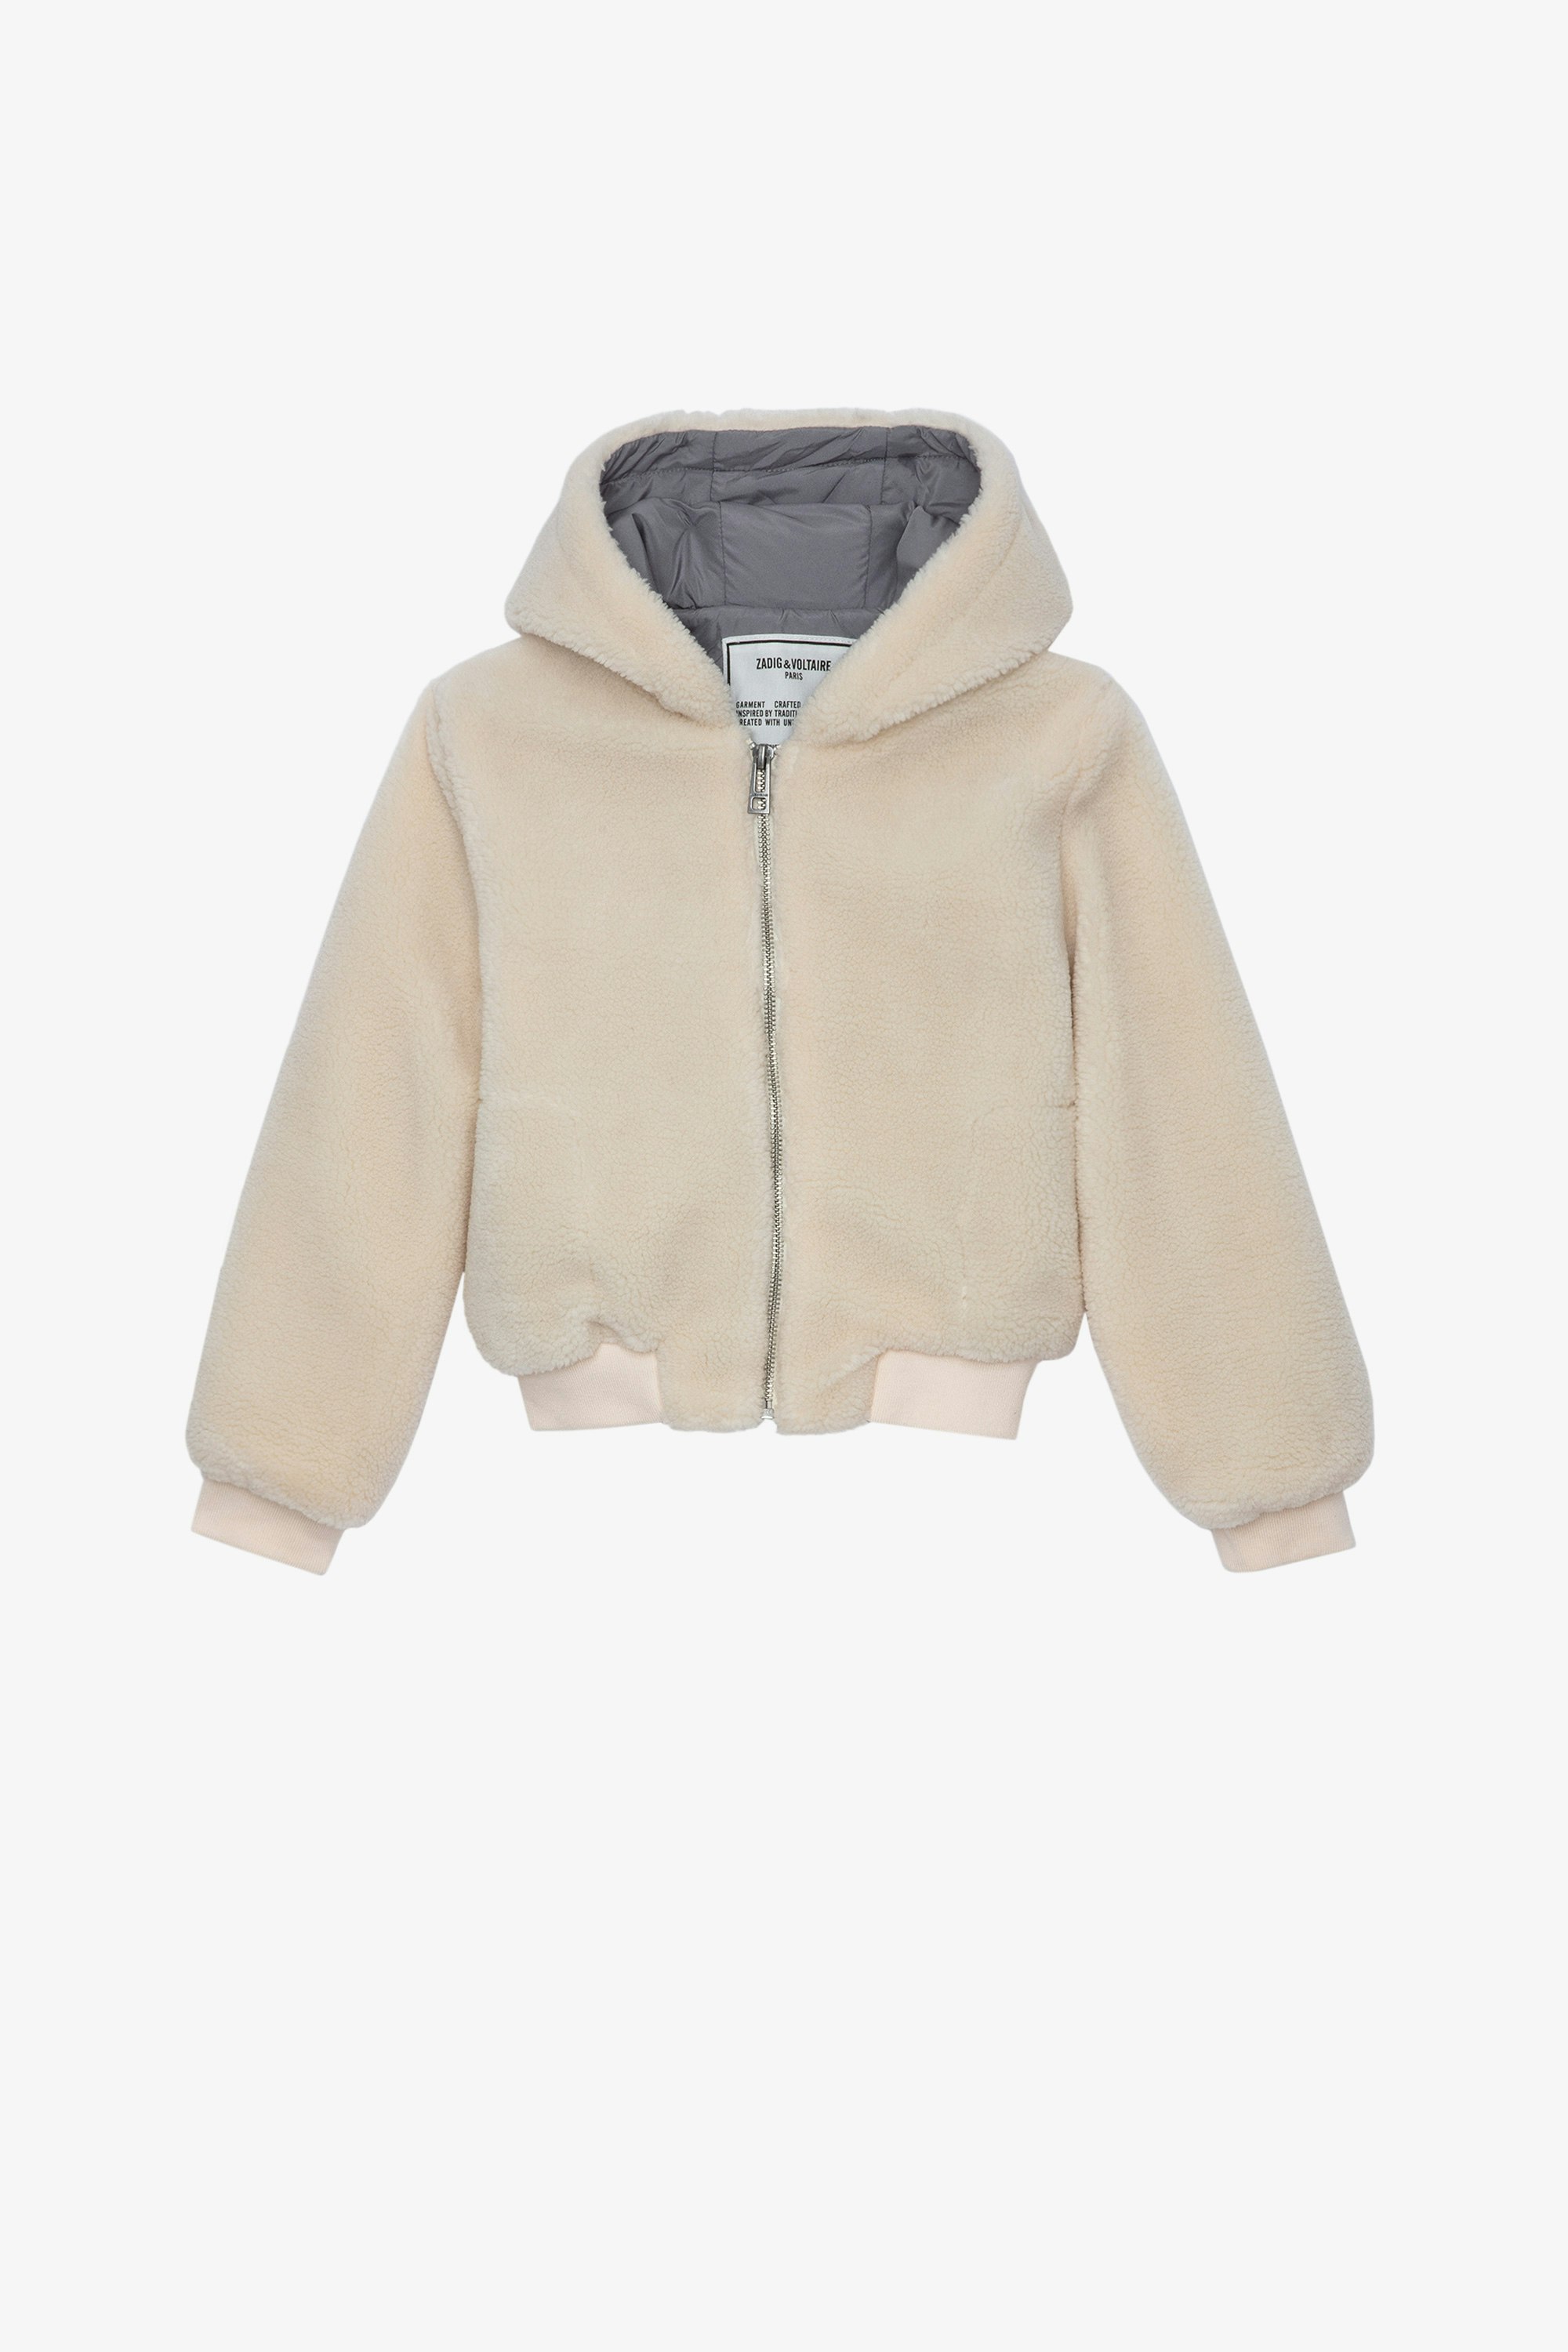 Charlie Children’s ジャケット Children’s cream long-sleeve zip-up hoodie jacket 